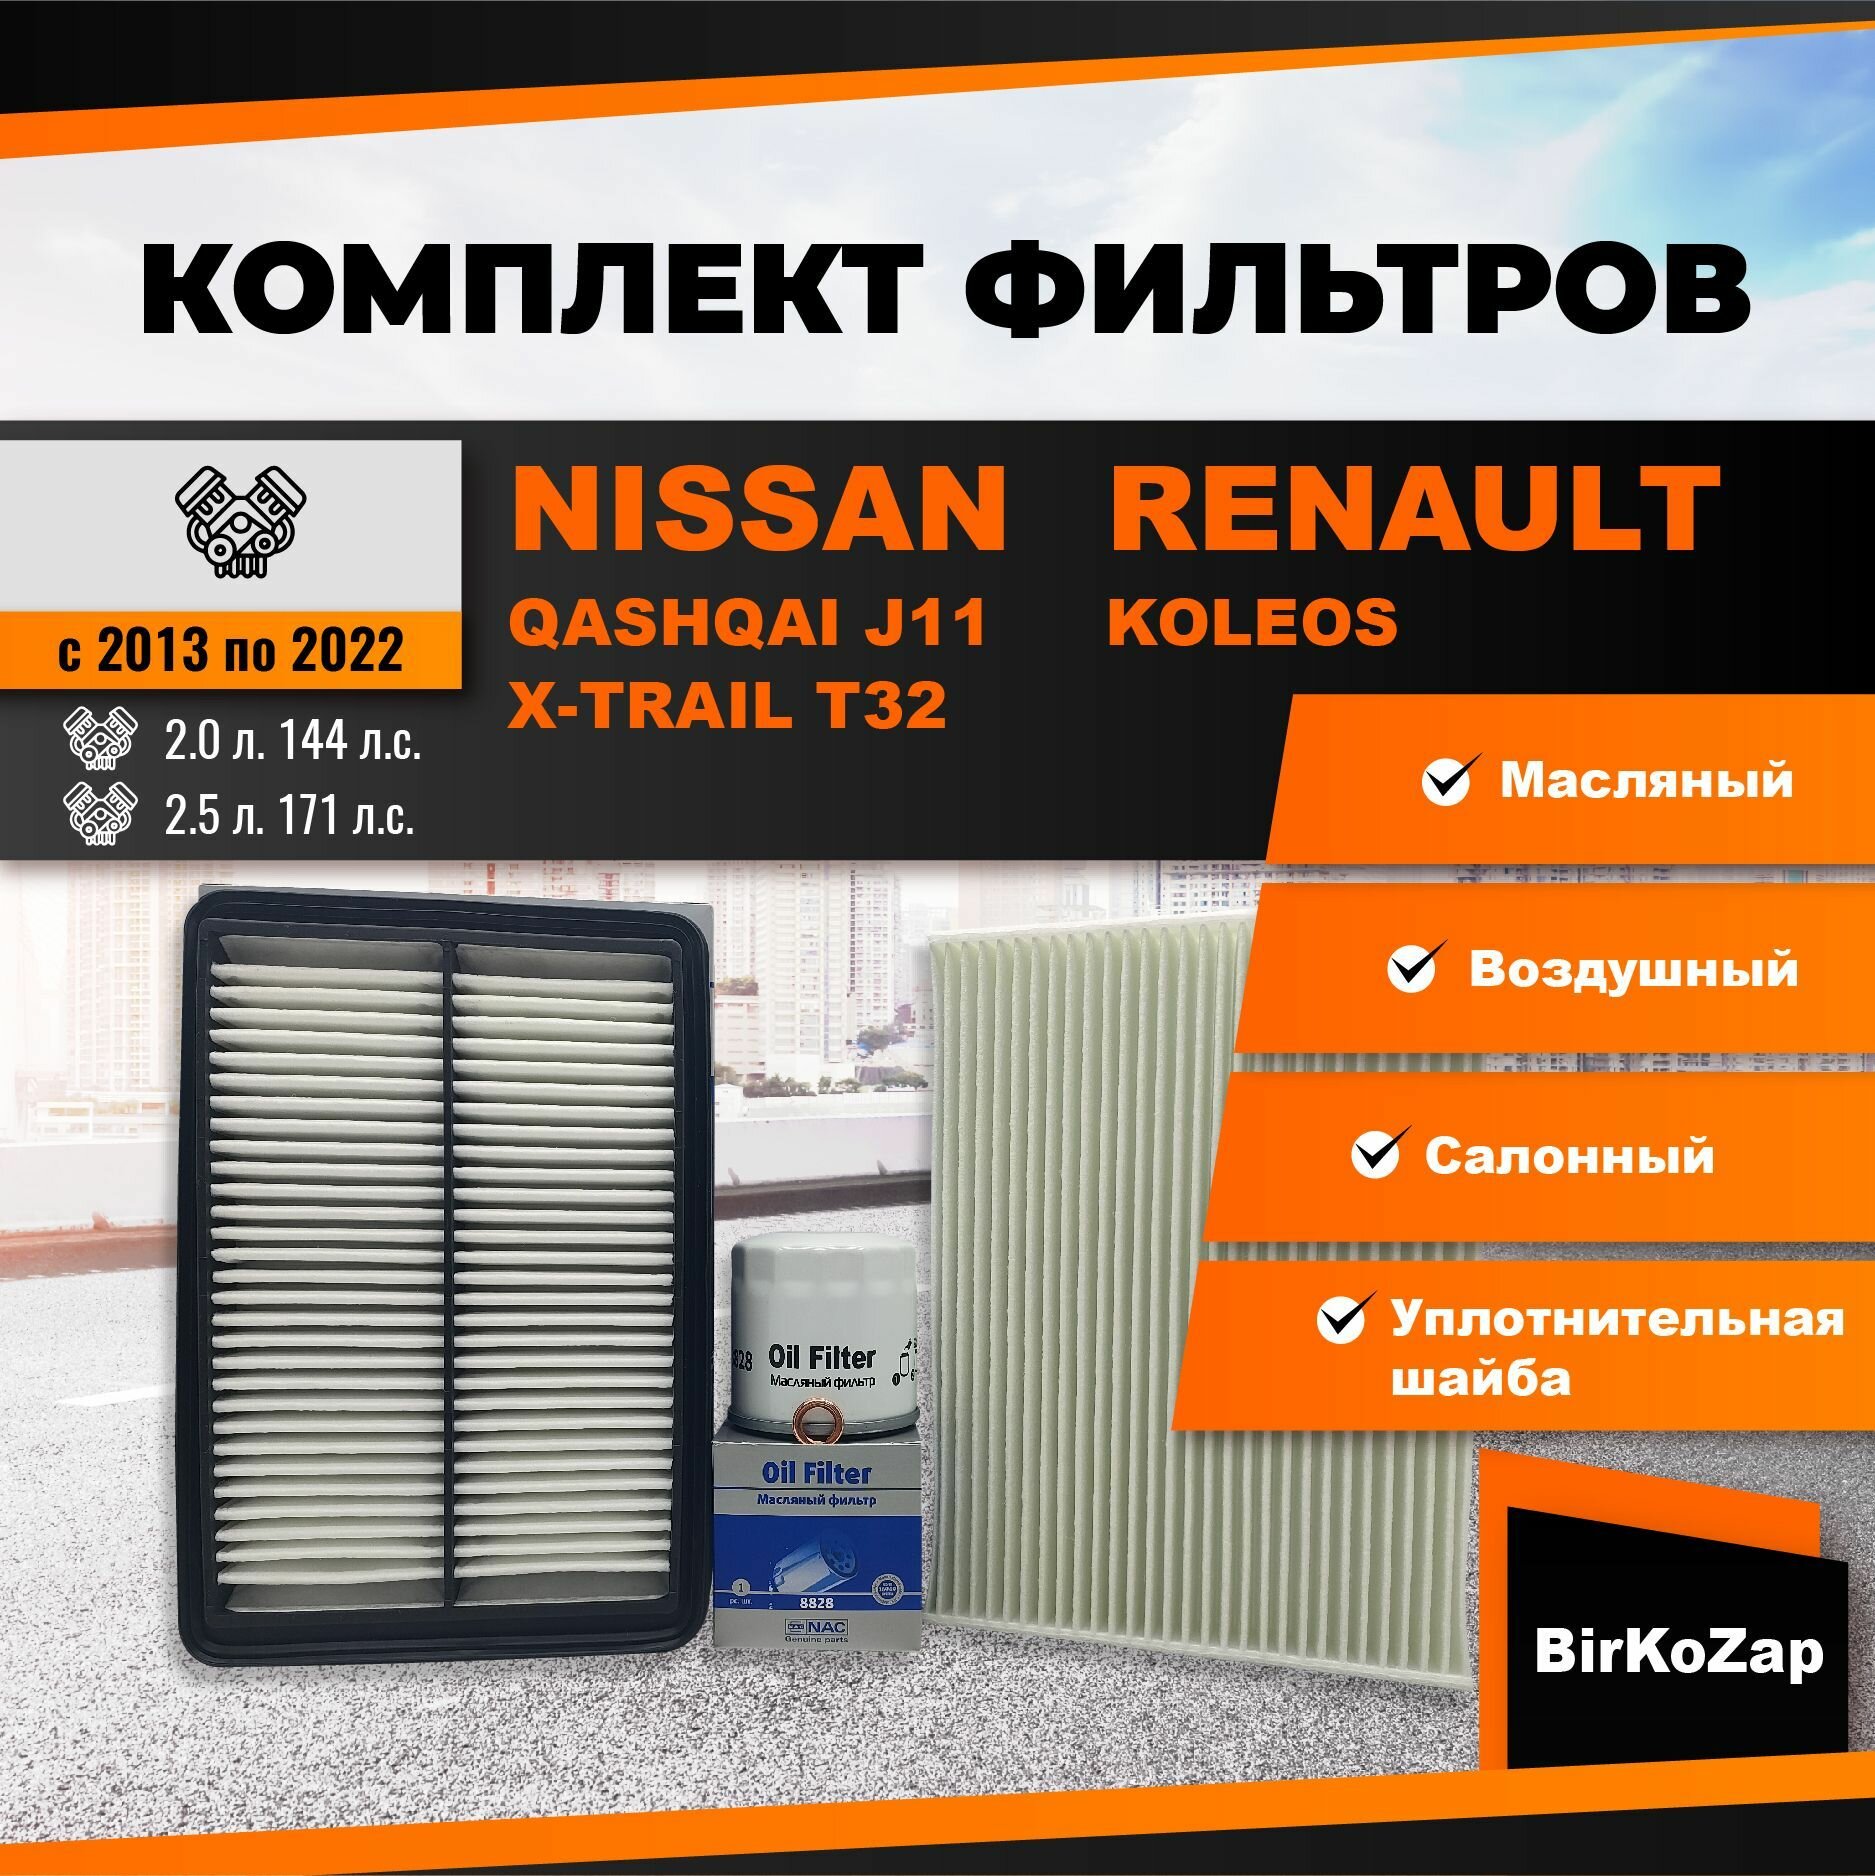 Комплект фильтров для ТО NISSAN Qashqai J11, NISSAN X-Trail T32, Renault Koleos (фильтр масляный, воздушный, салонный + прокладка сливной пробки)